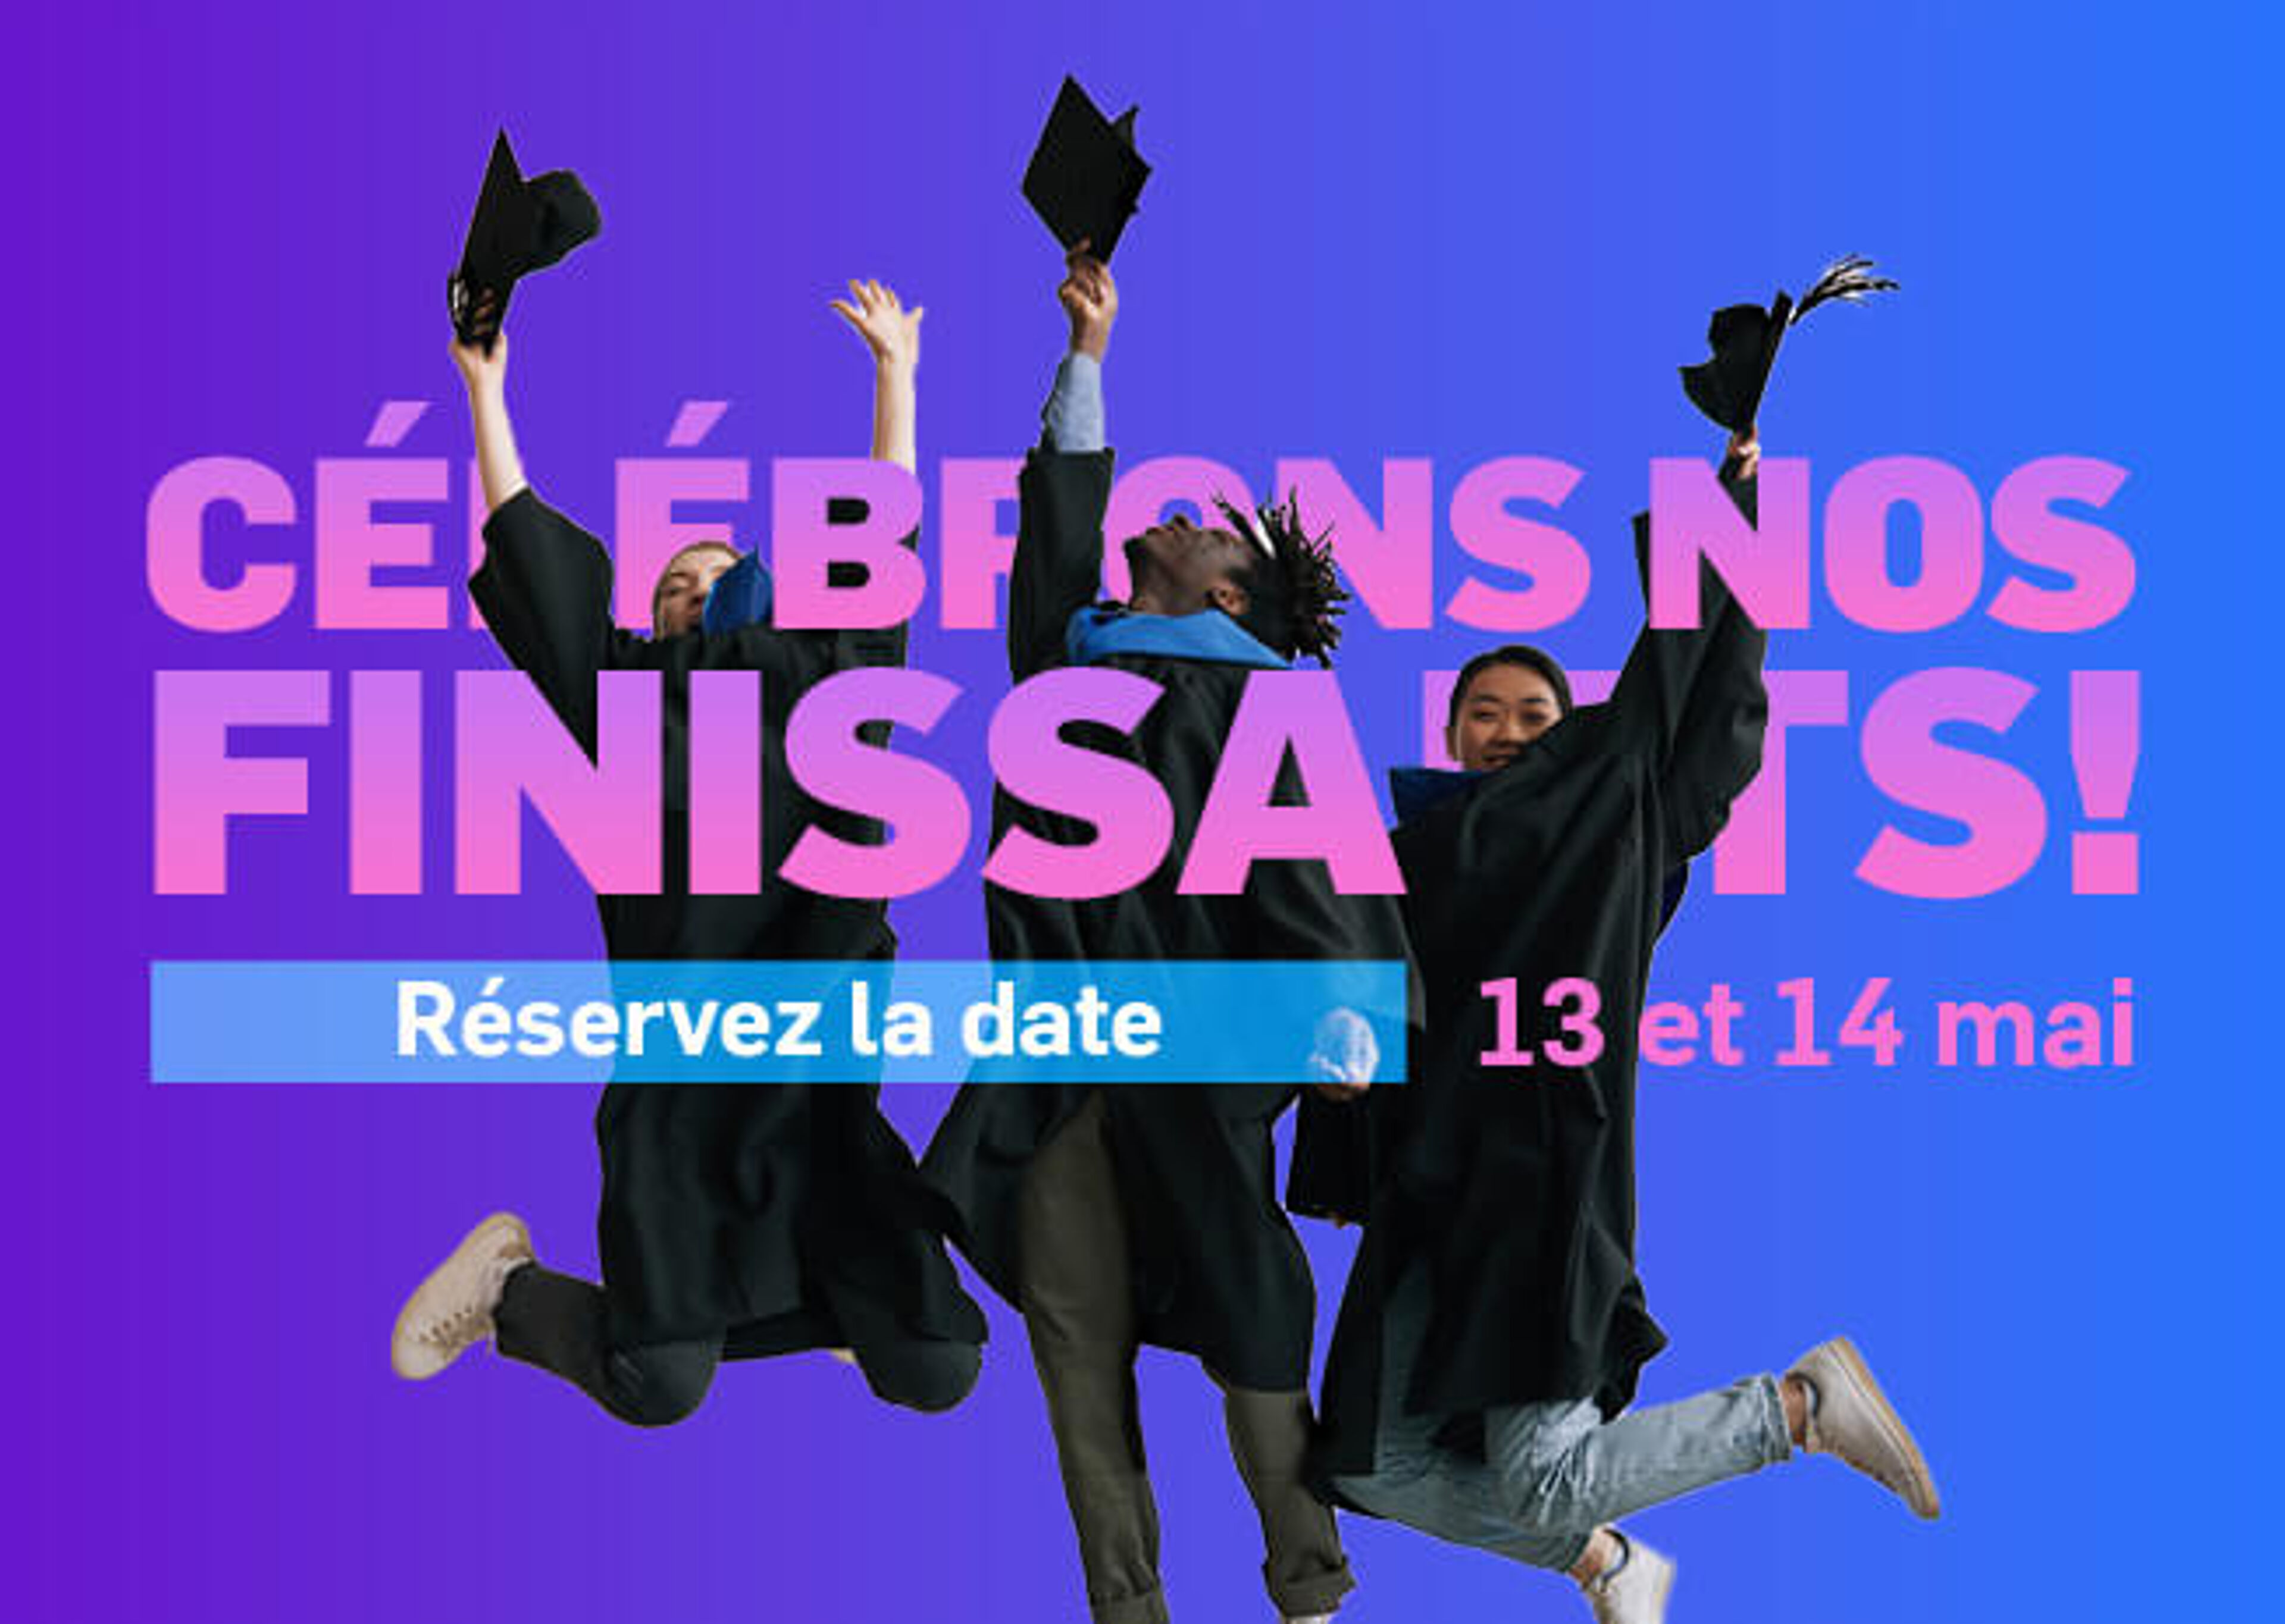 Un graphisme dynamique montrant des diplômés en toges et coiffes, sautant de joie, avec le texte "Célébrez nos Diplômés ! Réservez le 13 - 14 mai" sur fond violet.